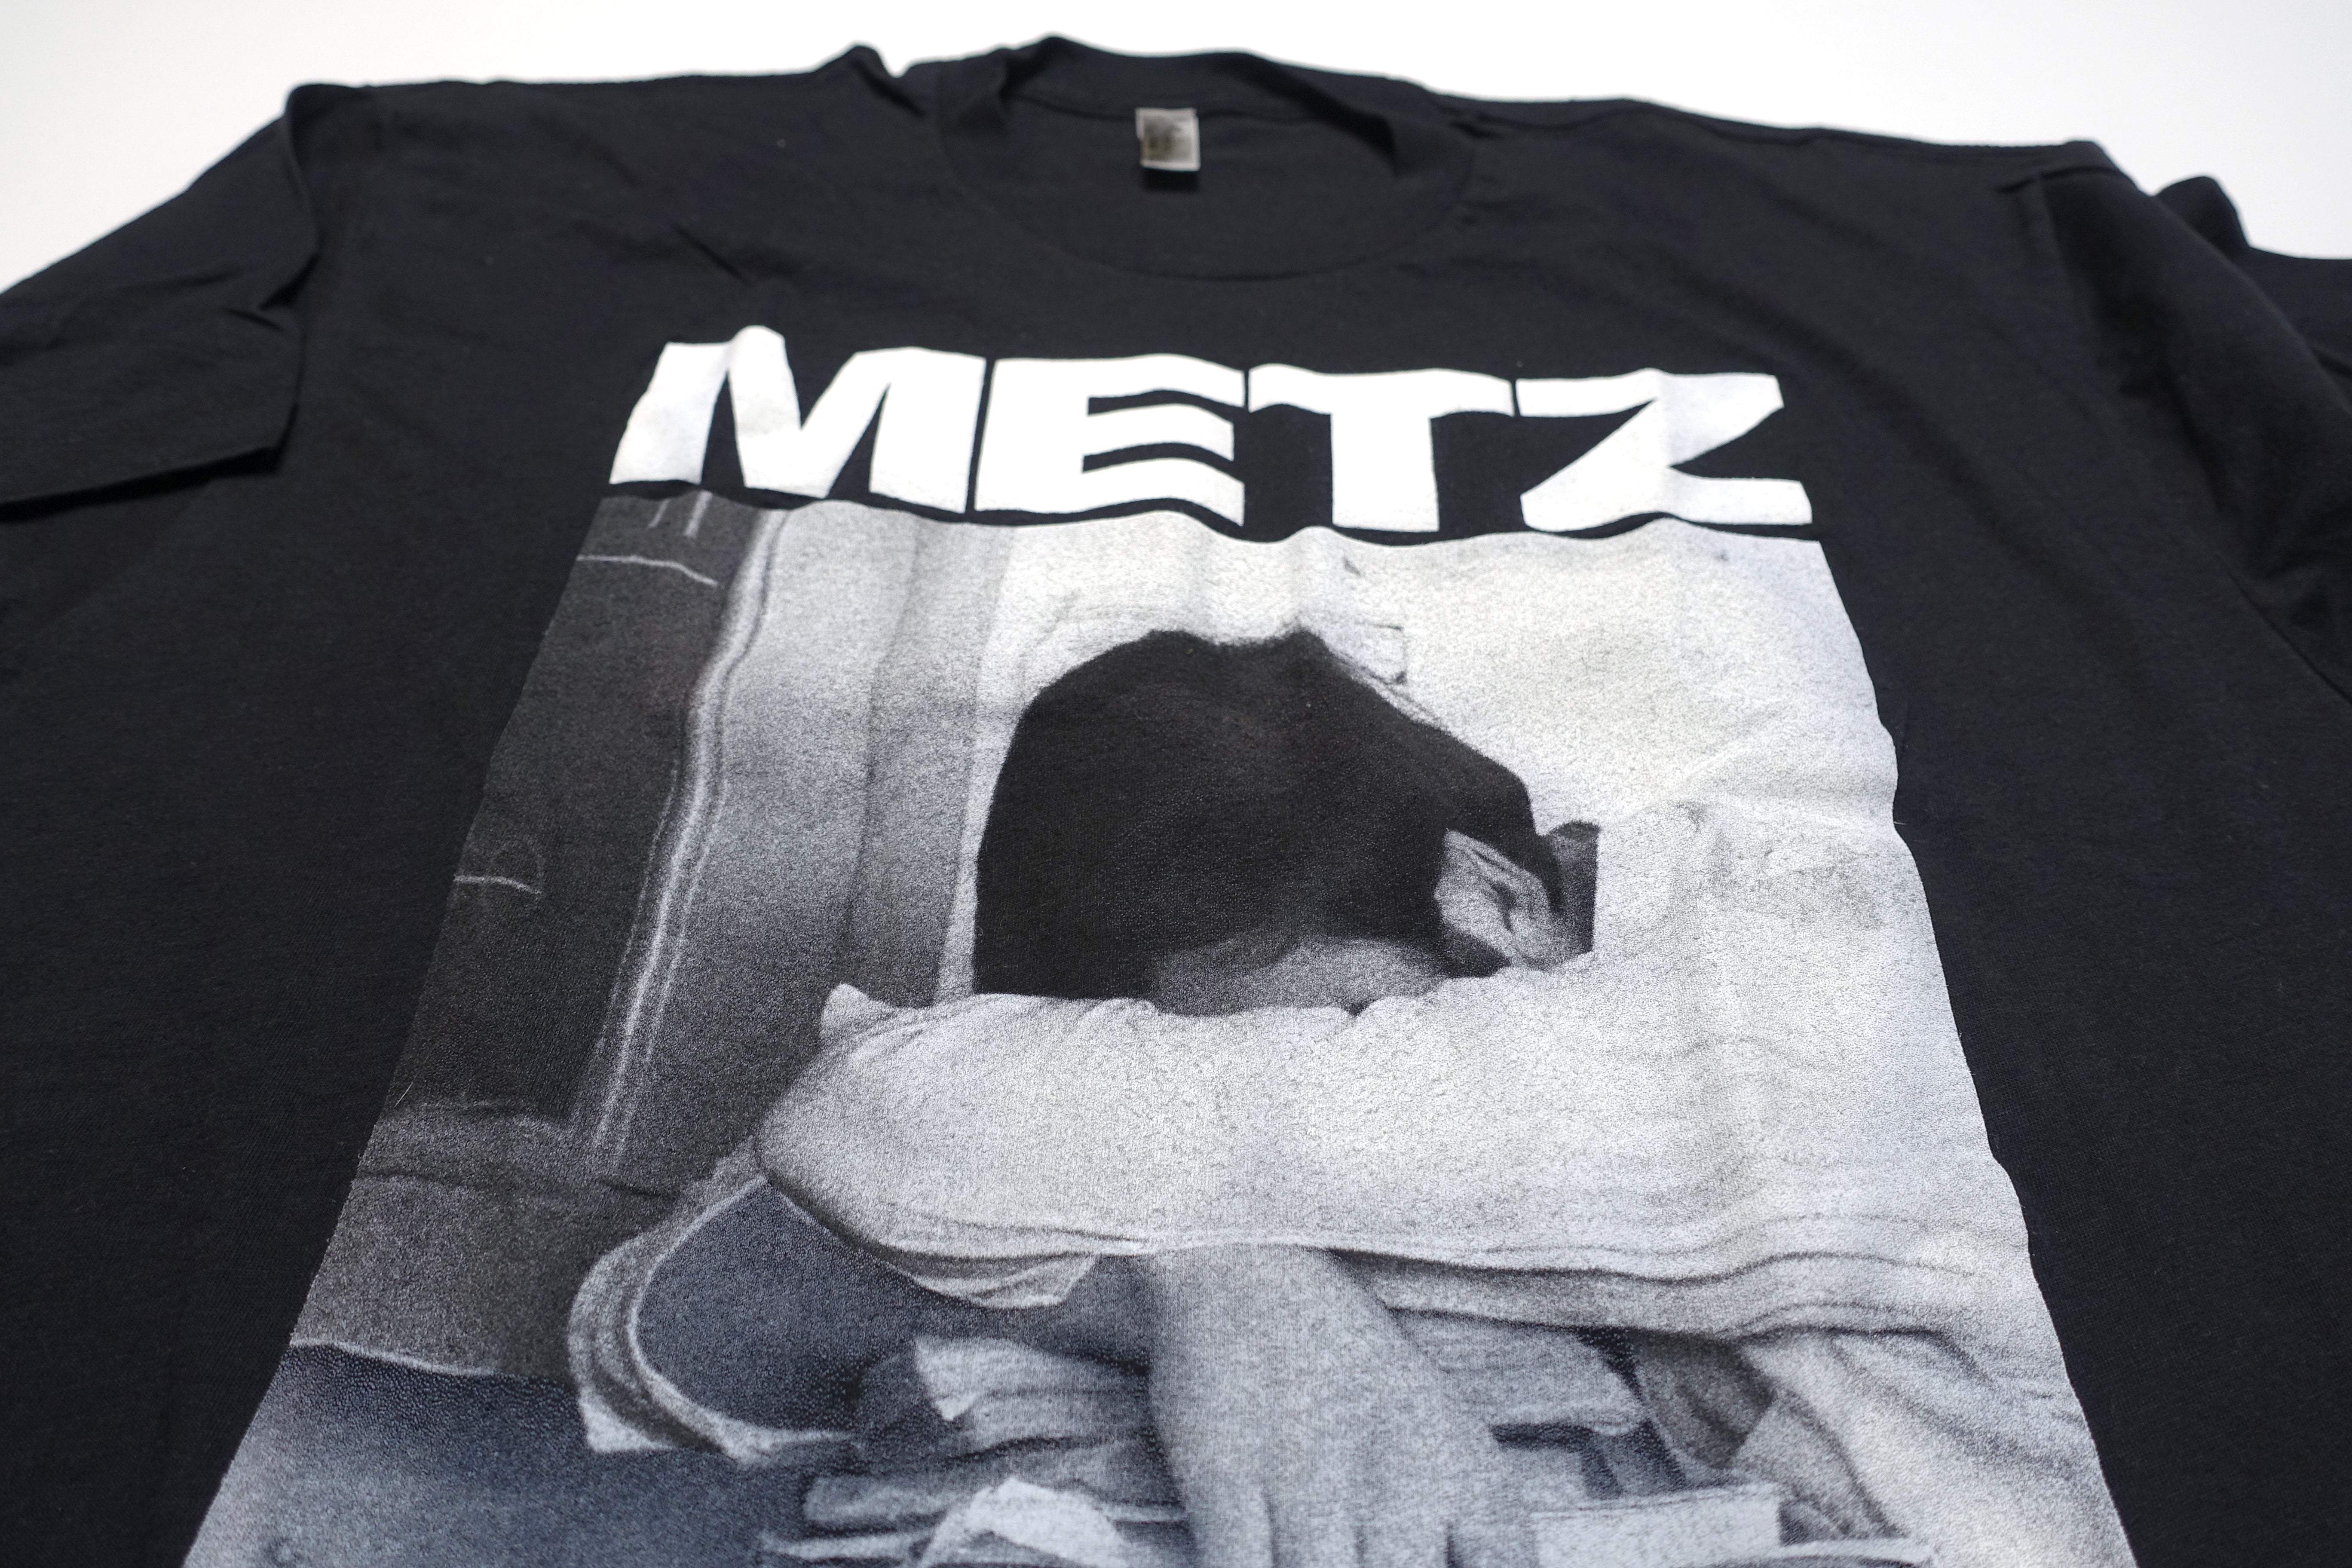 METZ - Metz I Cover 2012 Tour Shirt Size Large